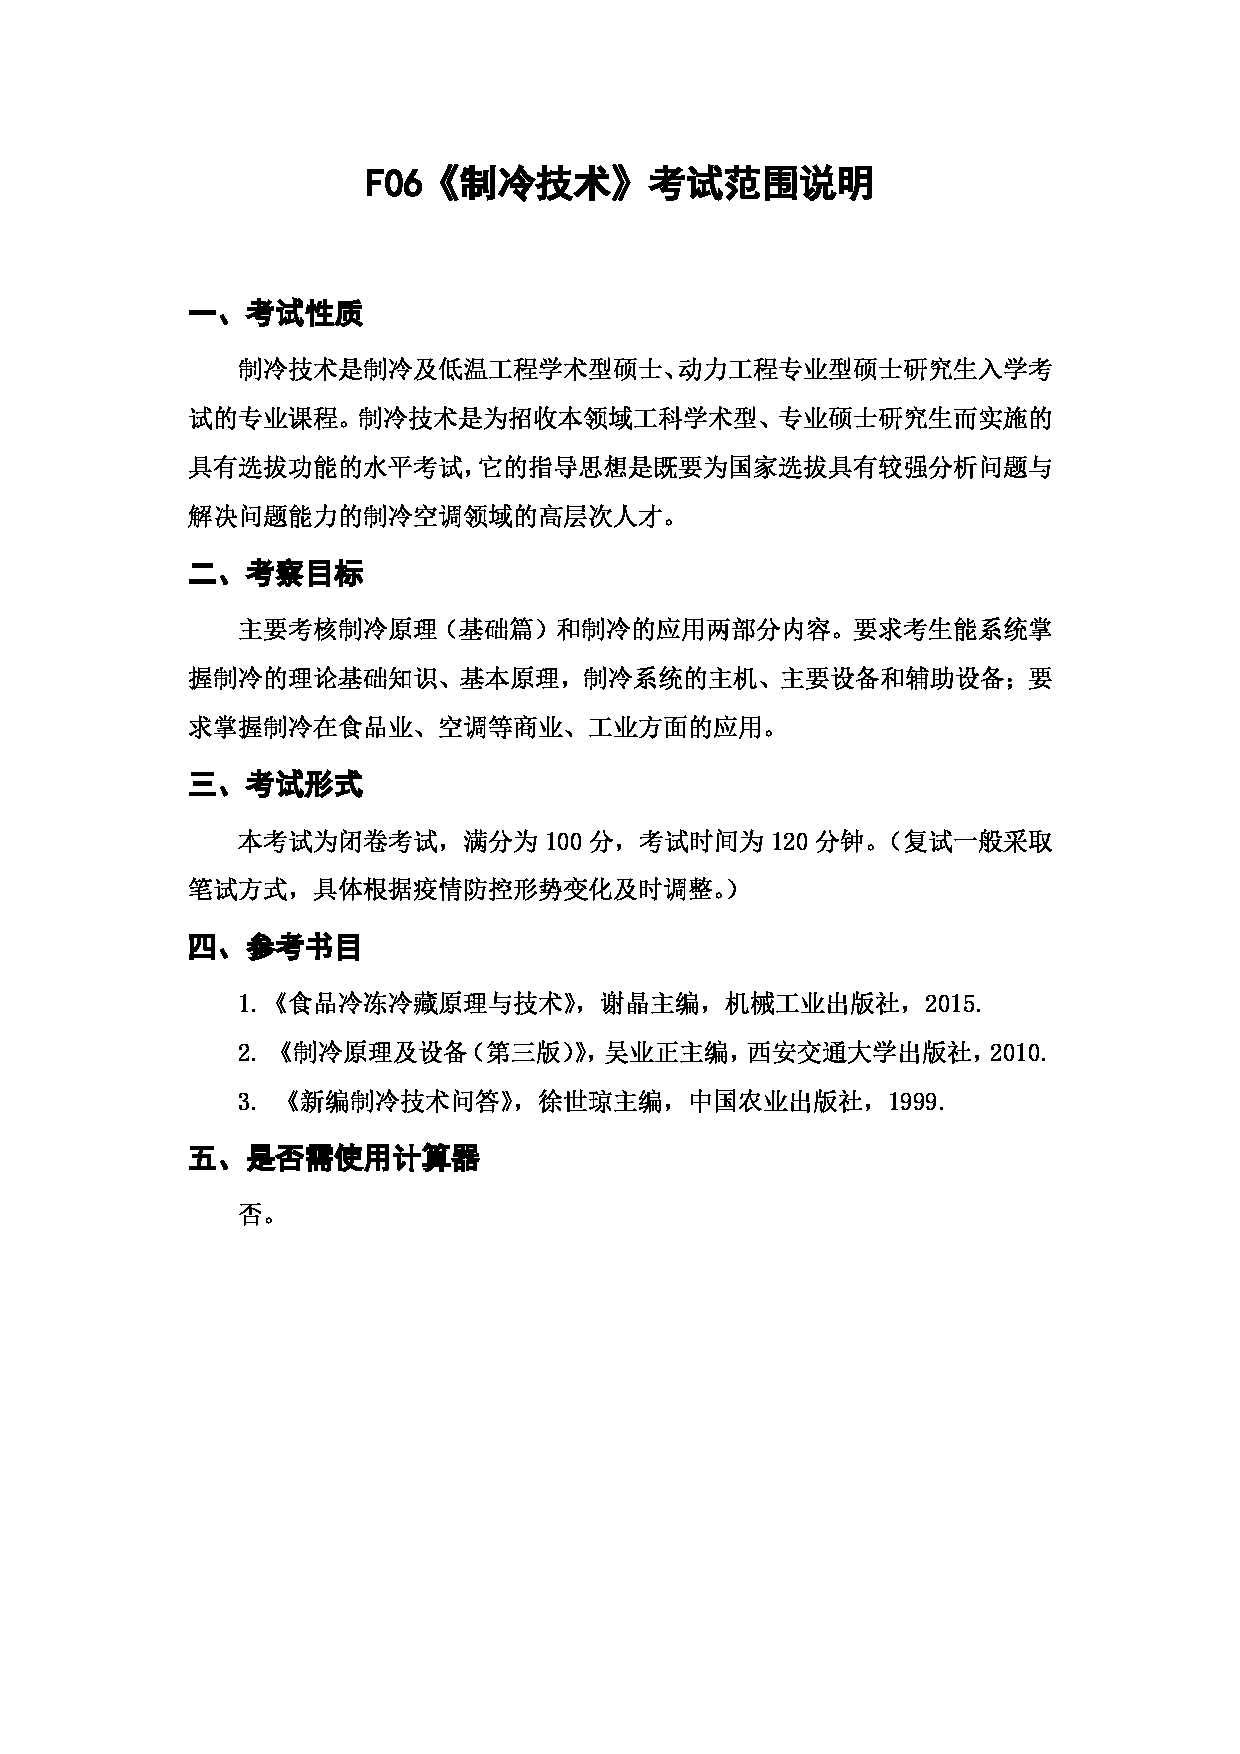 上海海洋大学2023年考研自命题科目  F06《制冷技术》 考试范围第1页